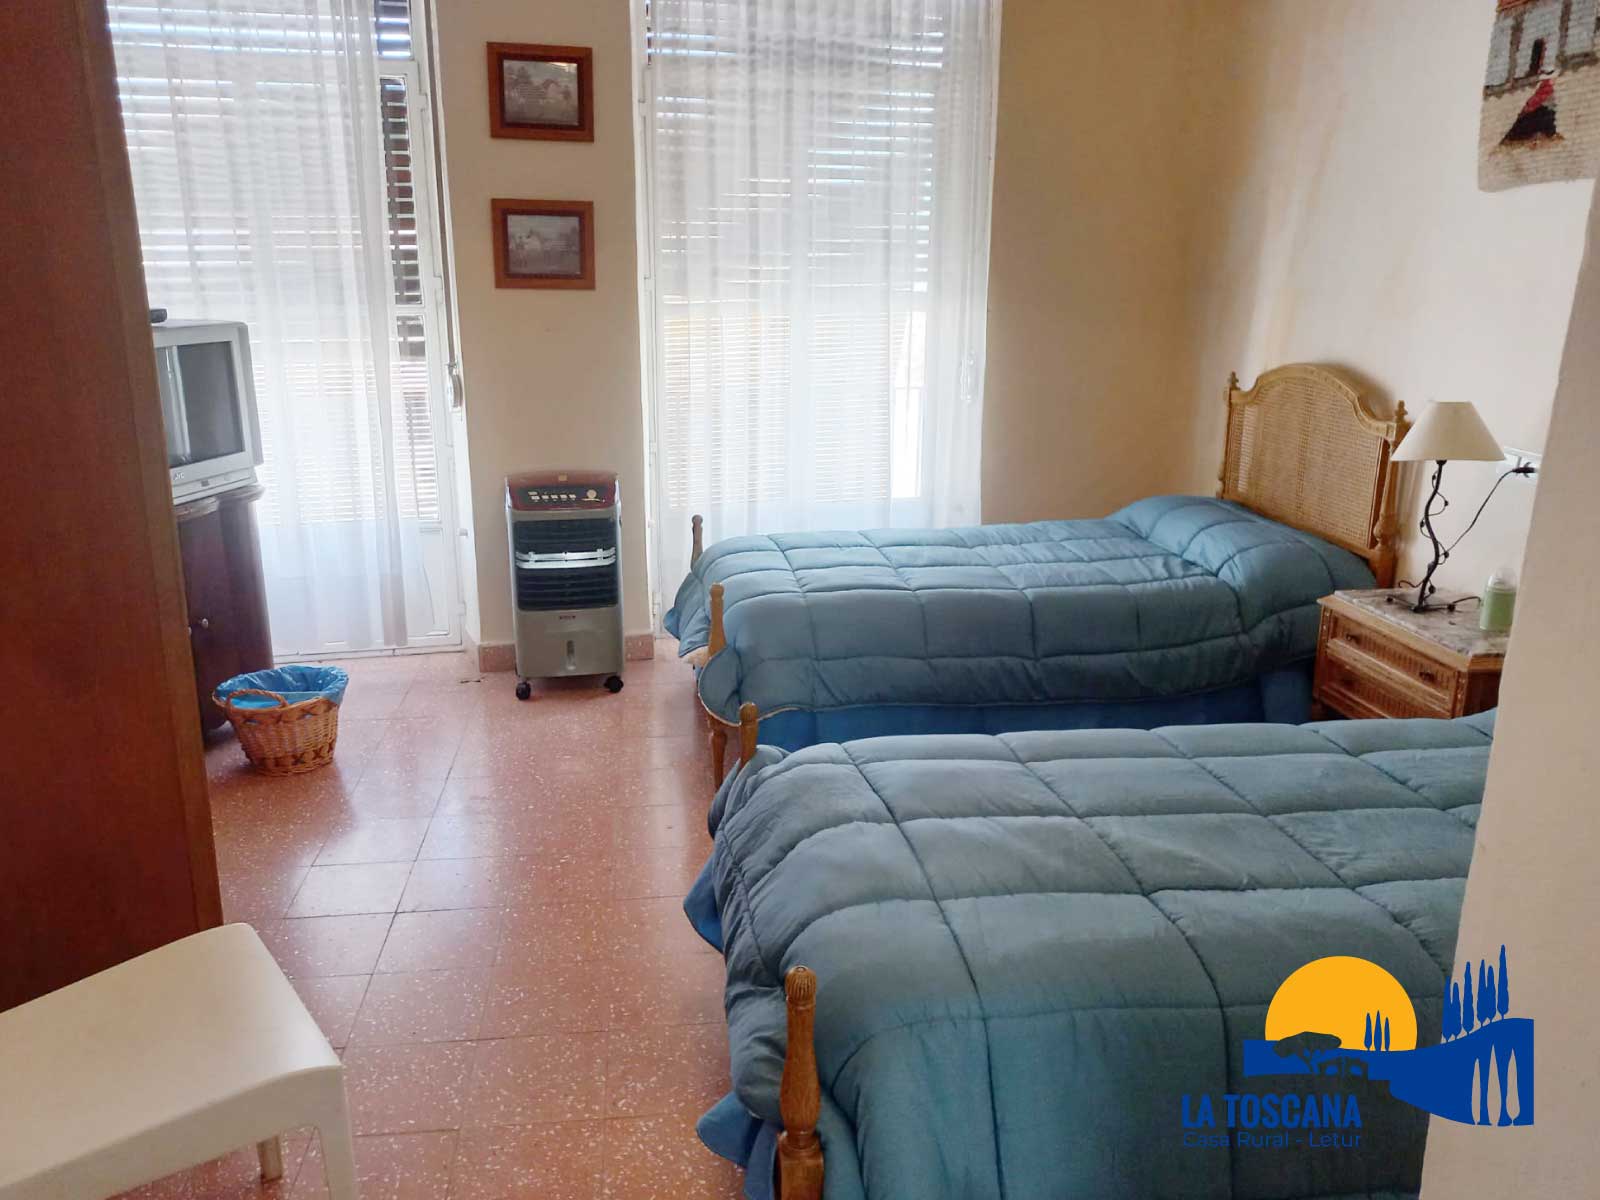 Habitación con dos camas individuales - La Toscana de Letur - Casa rural